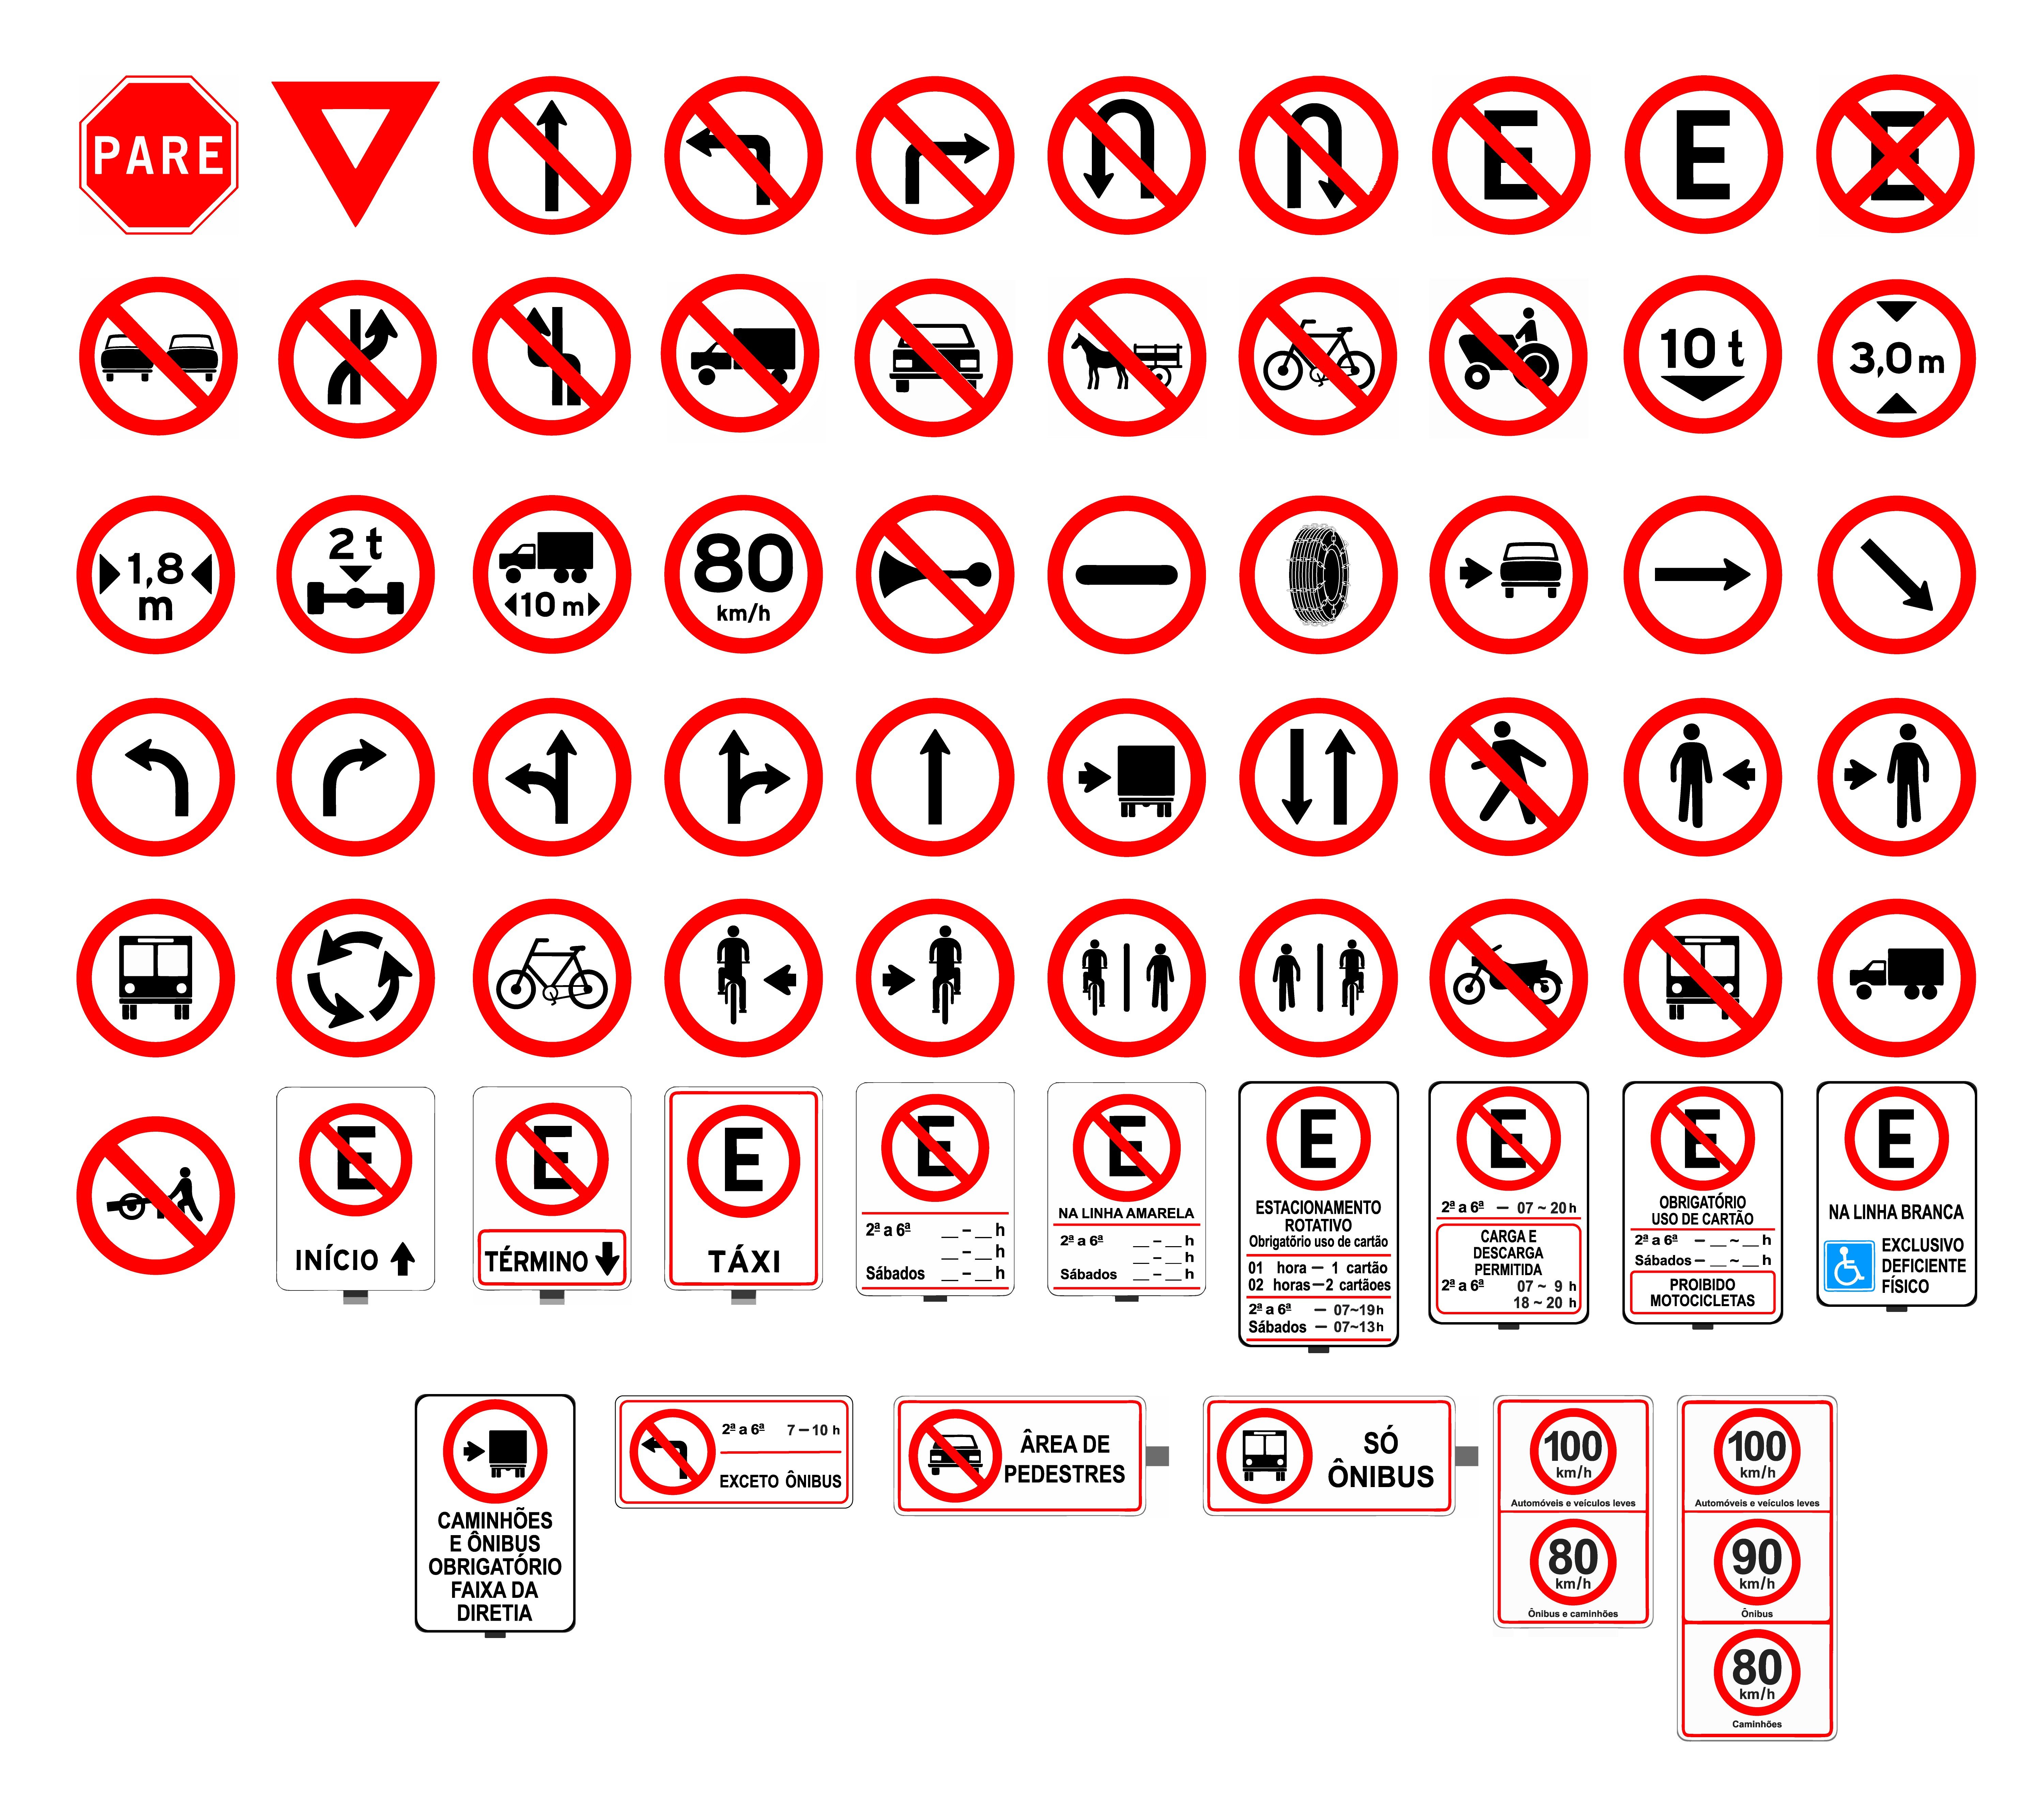 Todas as placas de trânsito do tipo regulamentação.